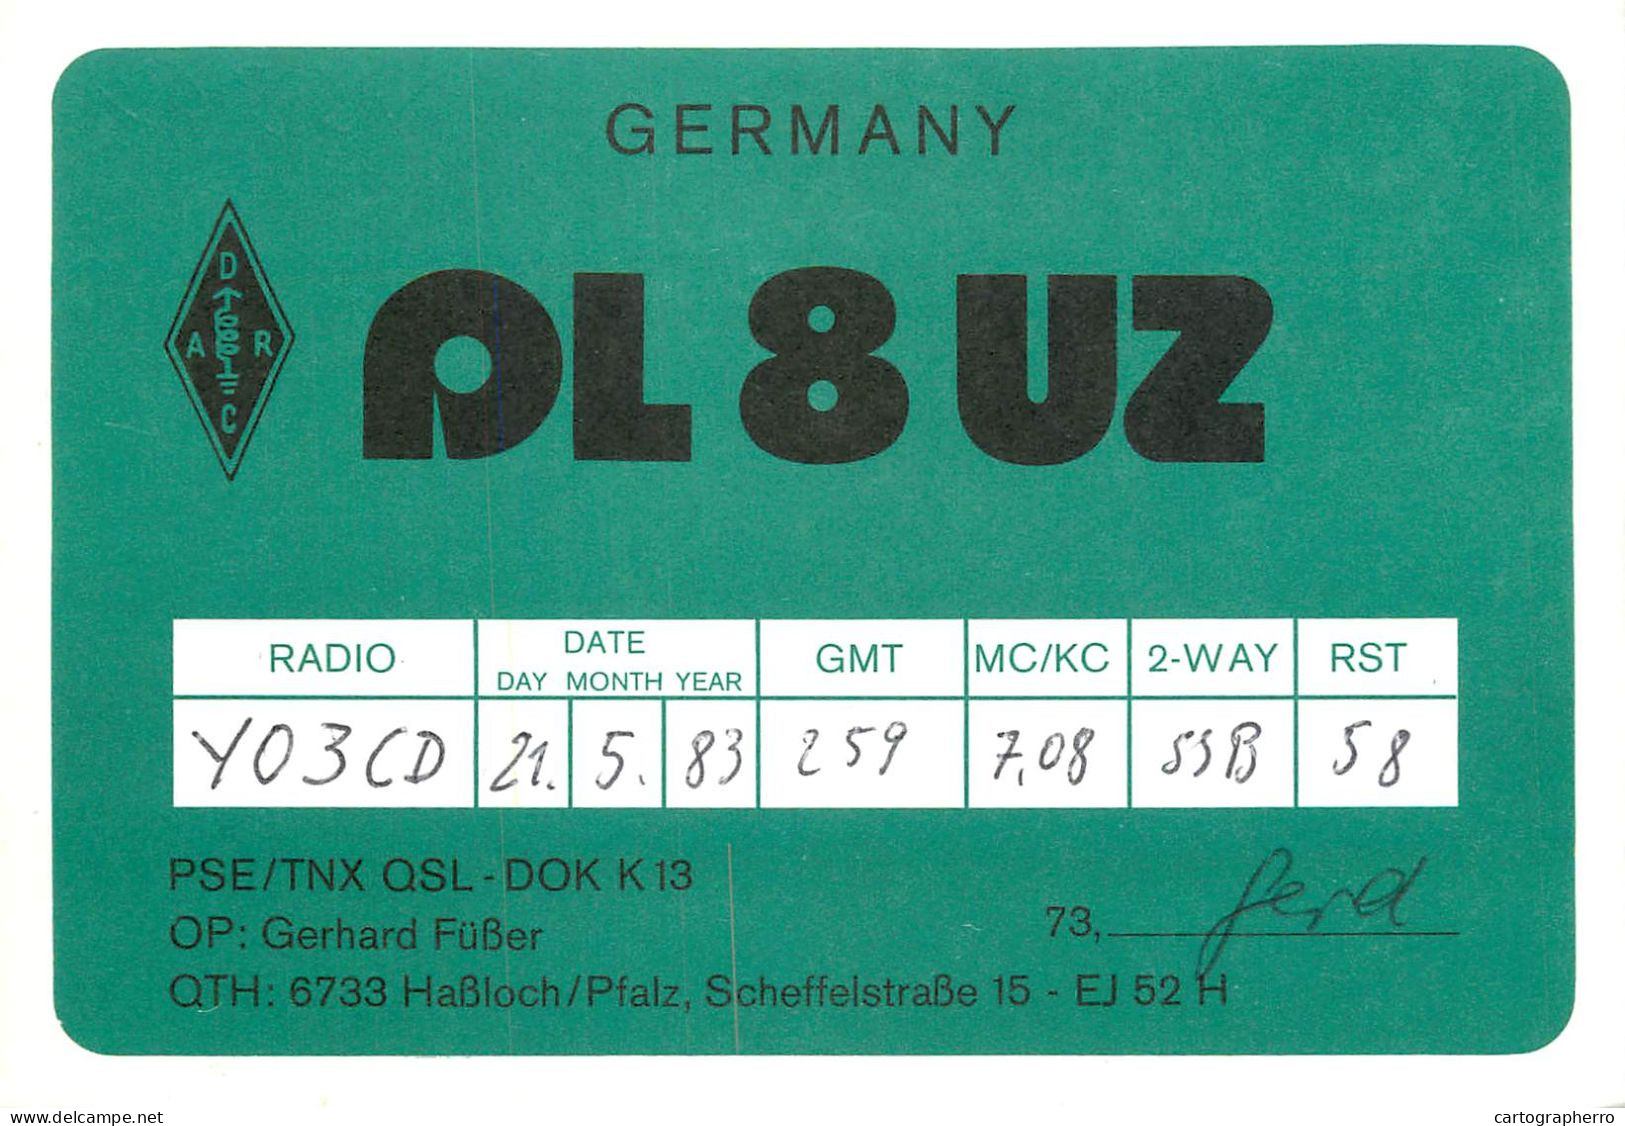 Germany Federal Republic Radio Amateur QSL Card Y03CD AL8UZ - Radio Amateur